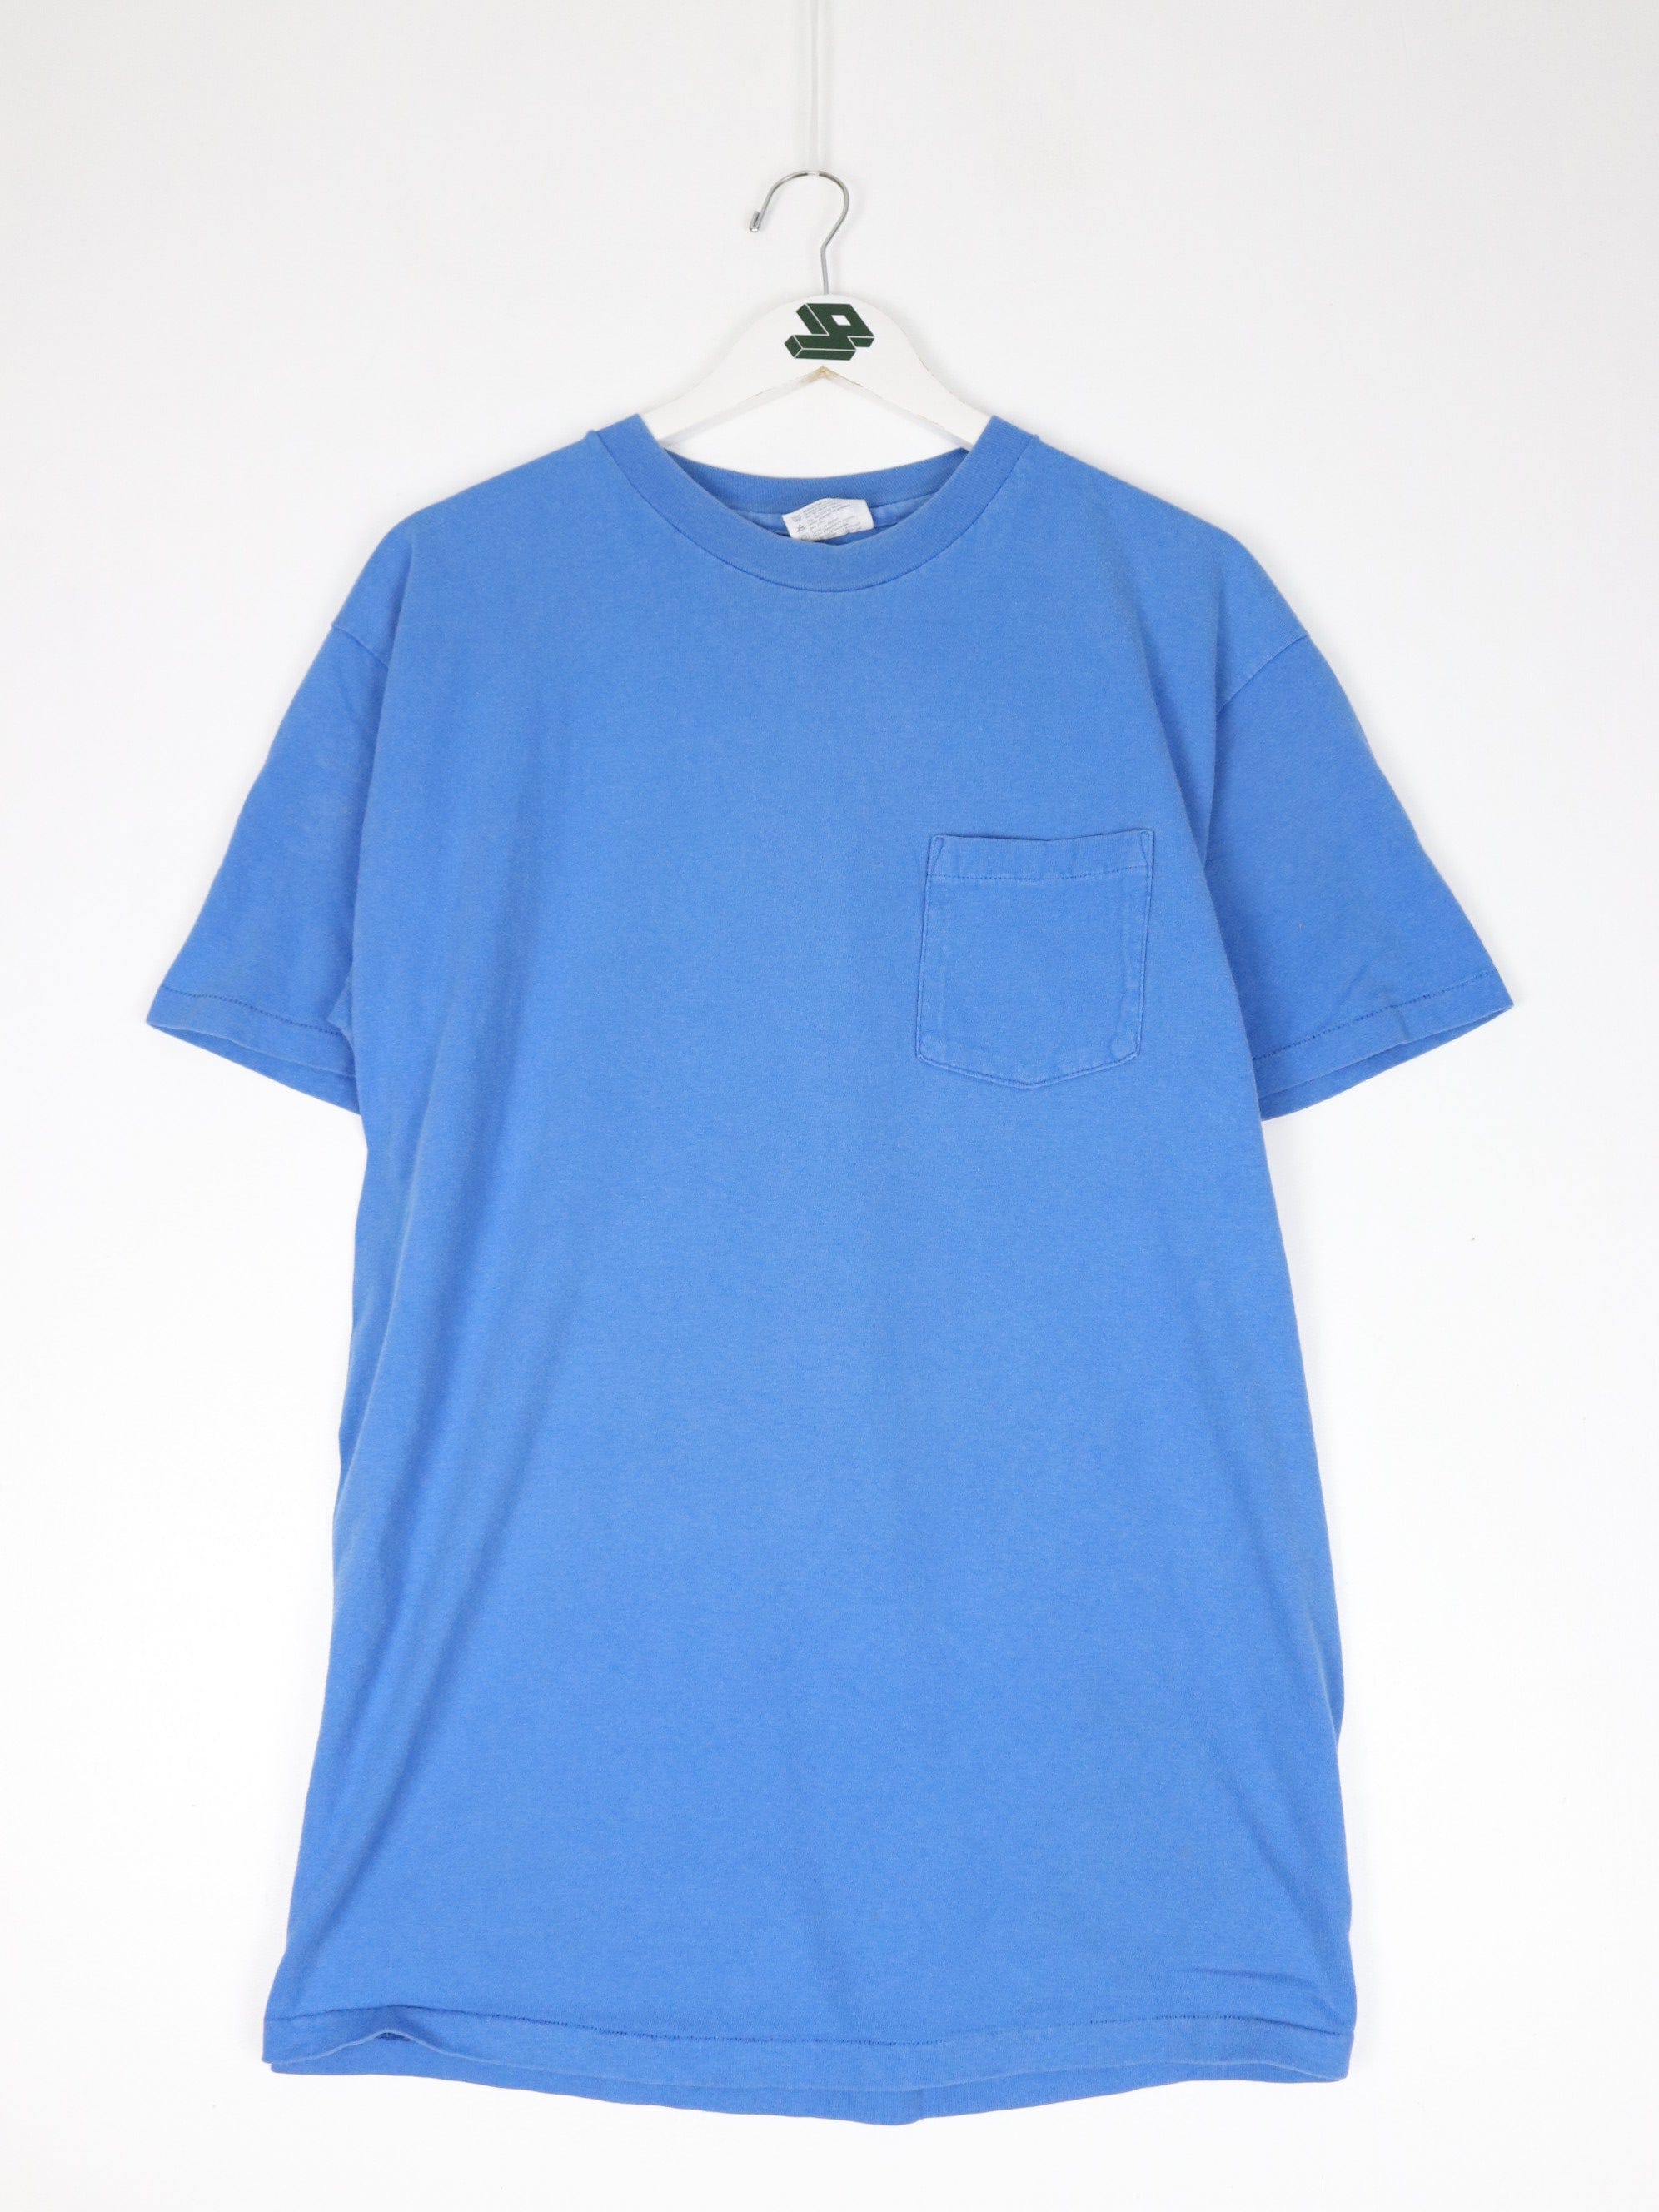 https://propervintagecanada.com/cdn/shop/files/other-t-shirts-tank-tops-vintage-hanes-beefy-t-shirt-fits-mens-large-blue-blank-pocket-90s-31680599752763.jpg?v=1700613843